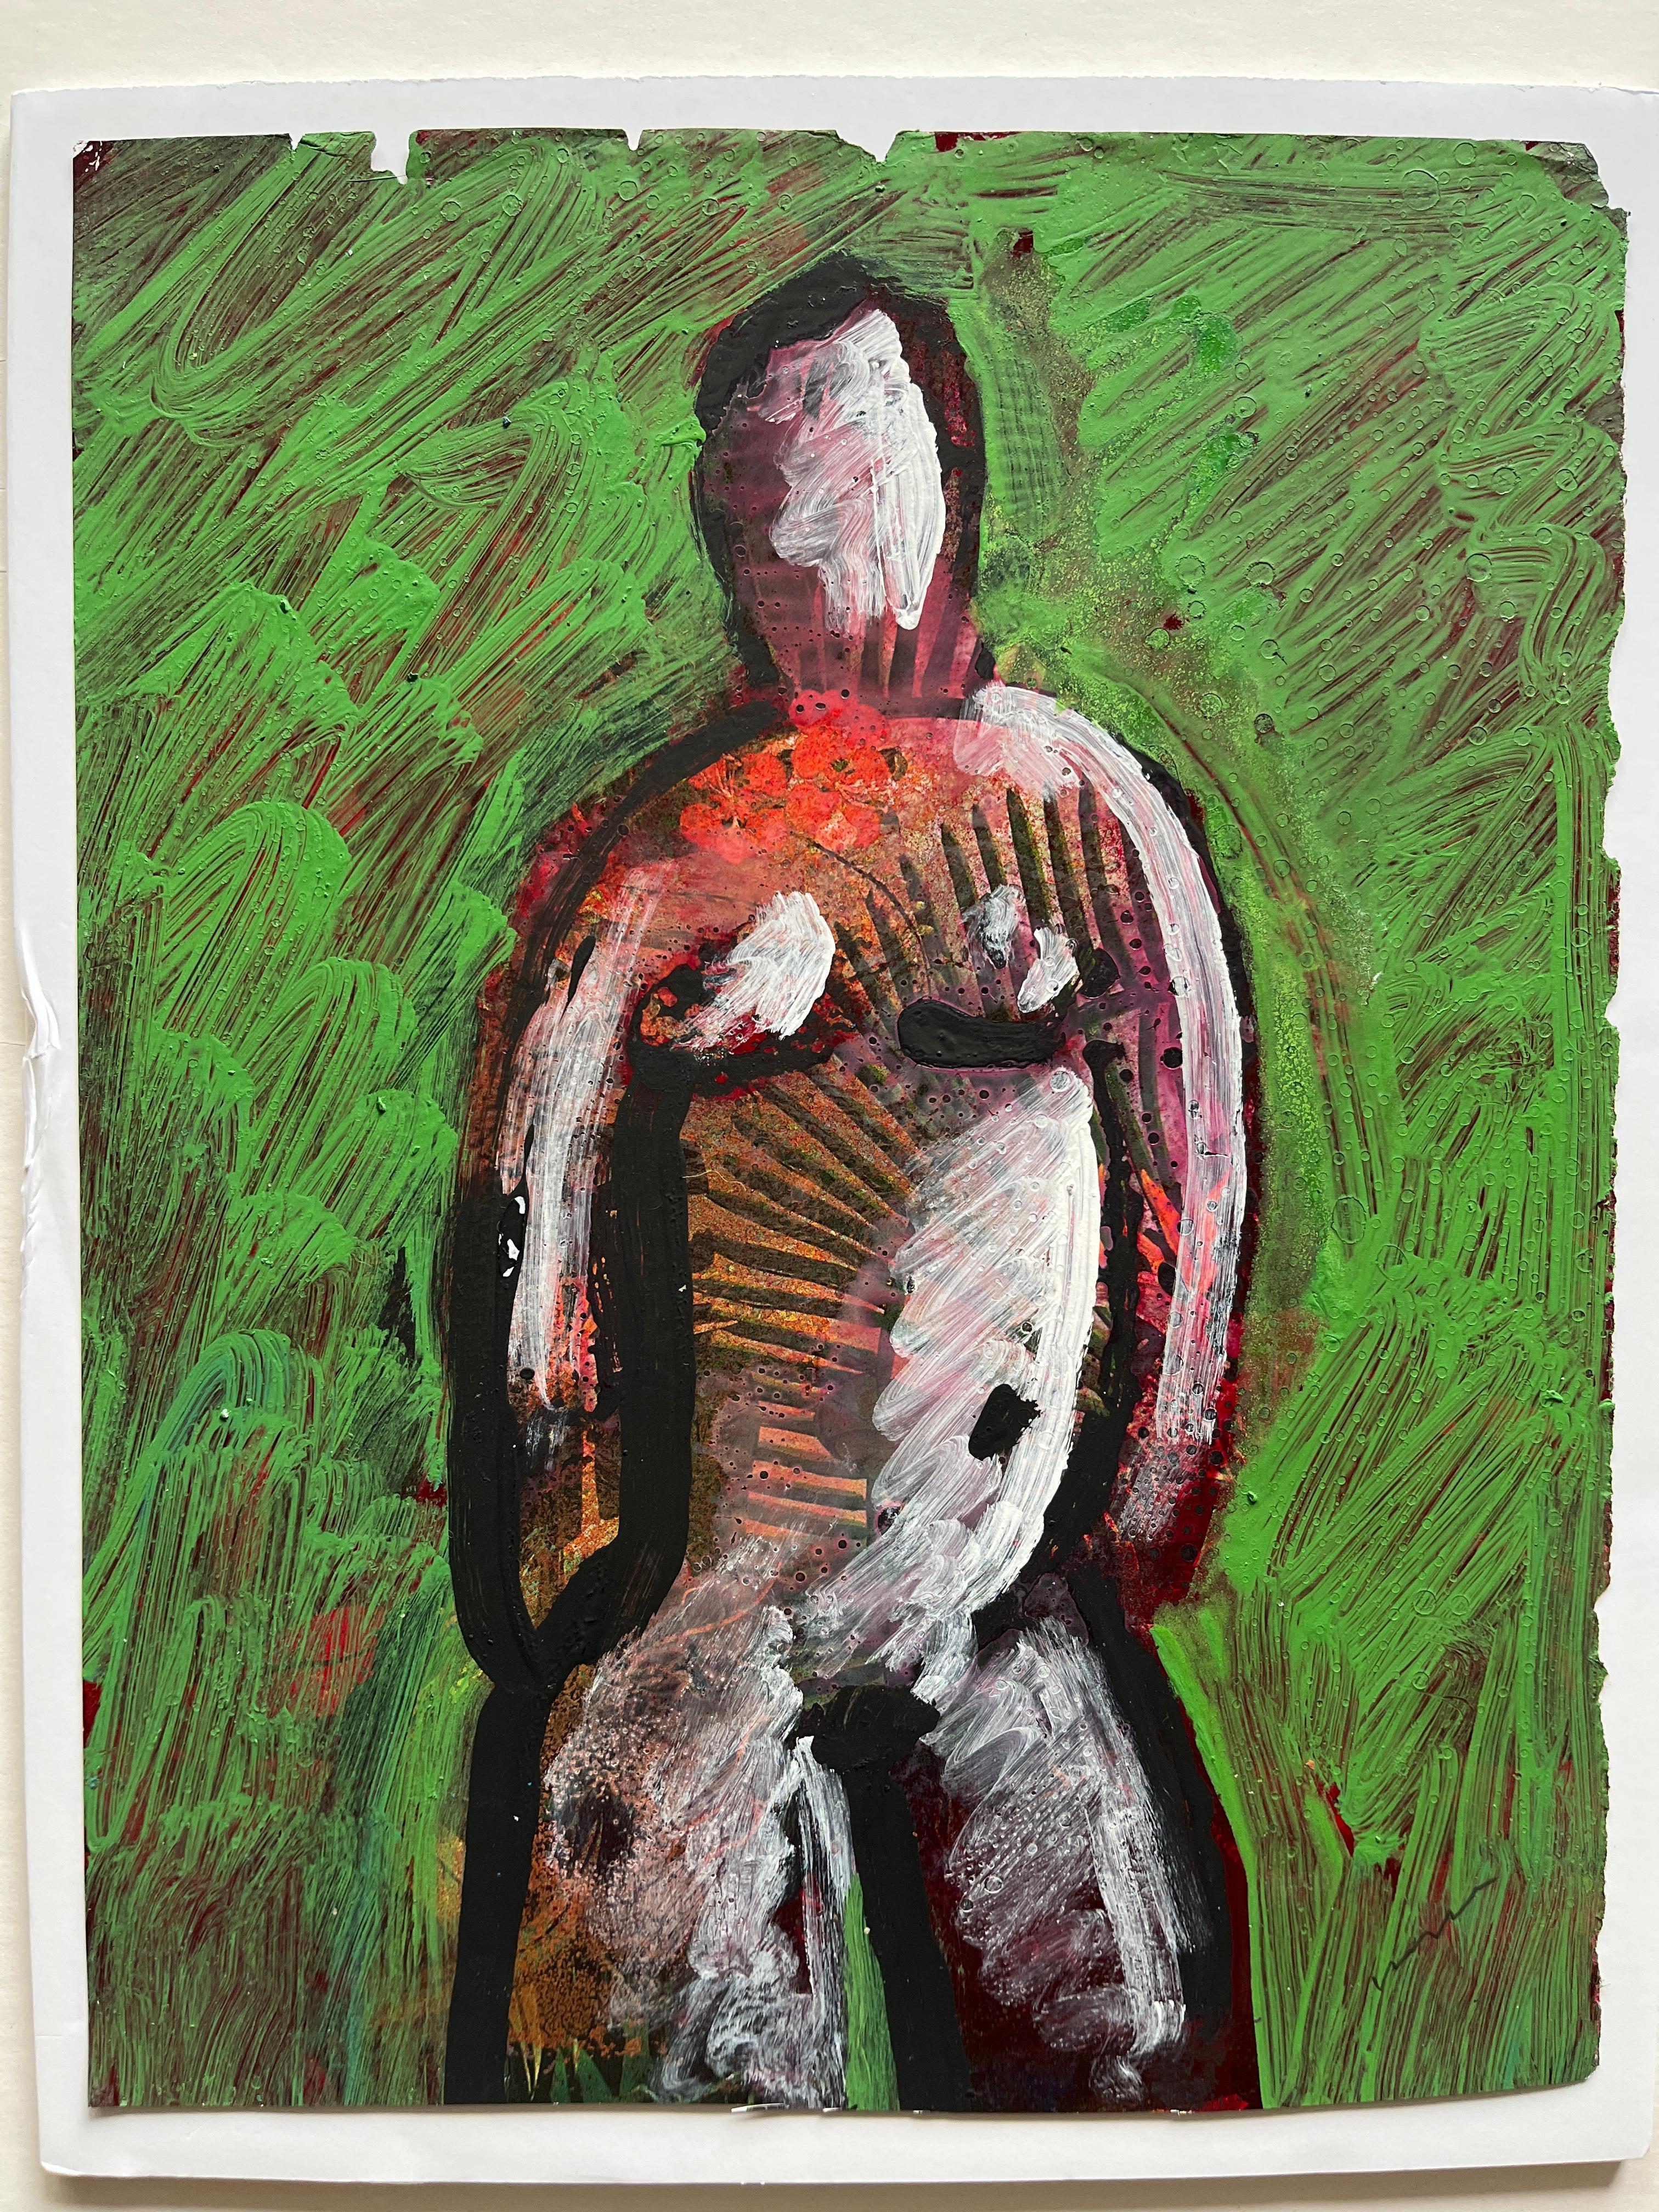 Jack Hooper
"Grüner Akt 2"
c. 1980s
Acrylfarbe auf Magazinseite
9 "x11,5", schwarzer Galerierahmen aus Holz, Passepartout 11 "x14"
Signiert mit Bleistift unten rechts

Hoopers unverwechselbarer künstlerischer Ansatz wird durch seine raffinierte